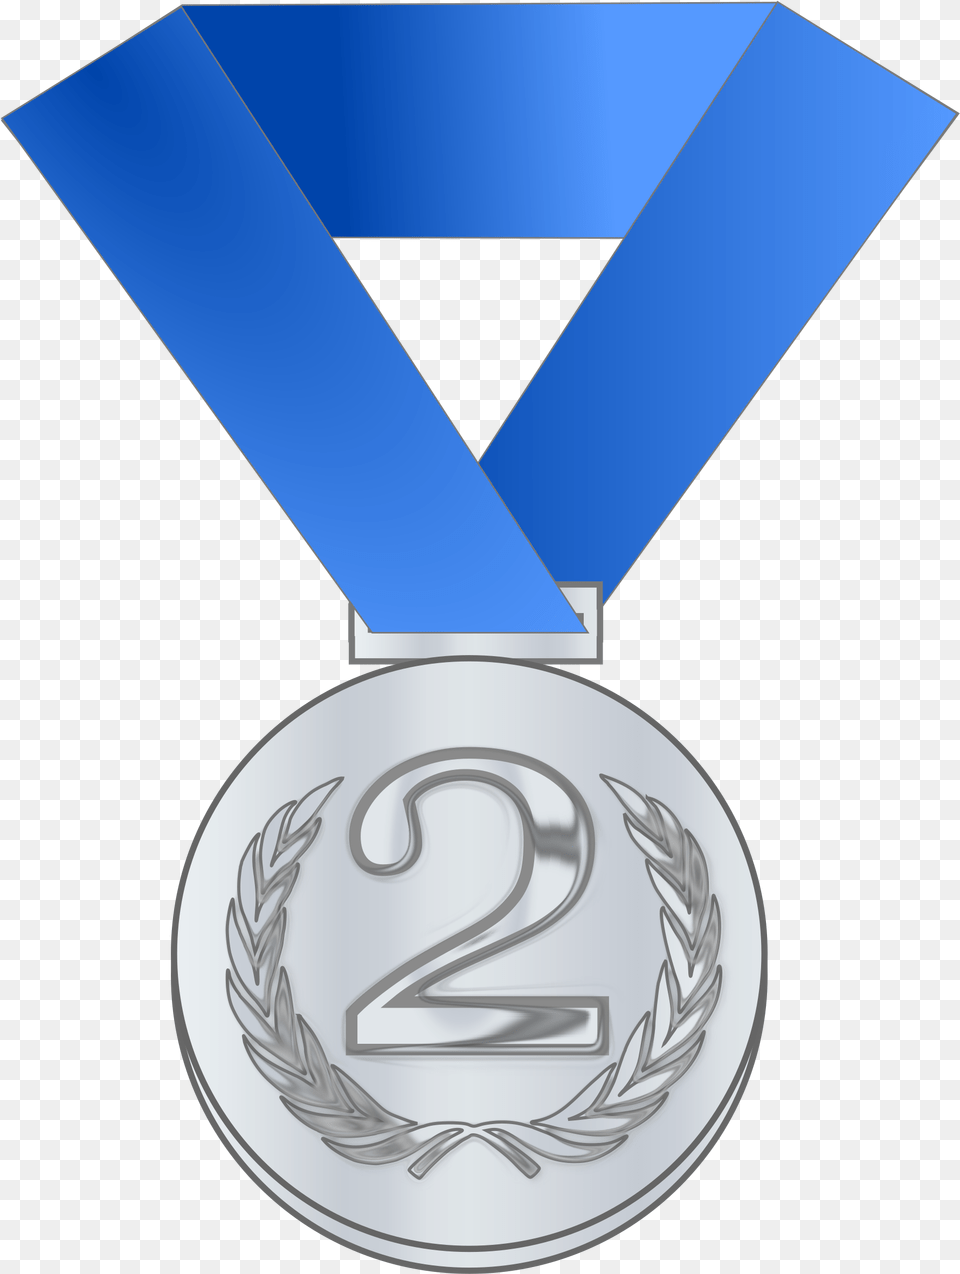 Medal Award Big Silver Medal Clipart, Gold, Trophy, Gold Medal Png Image